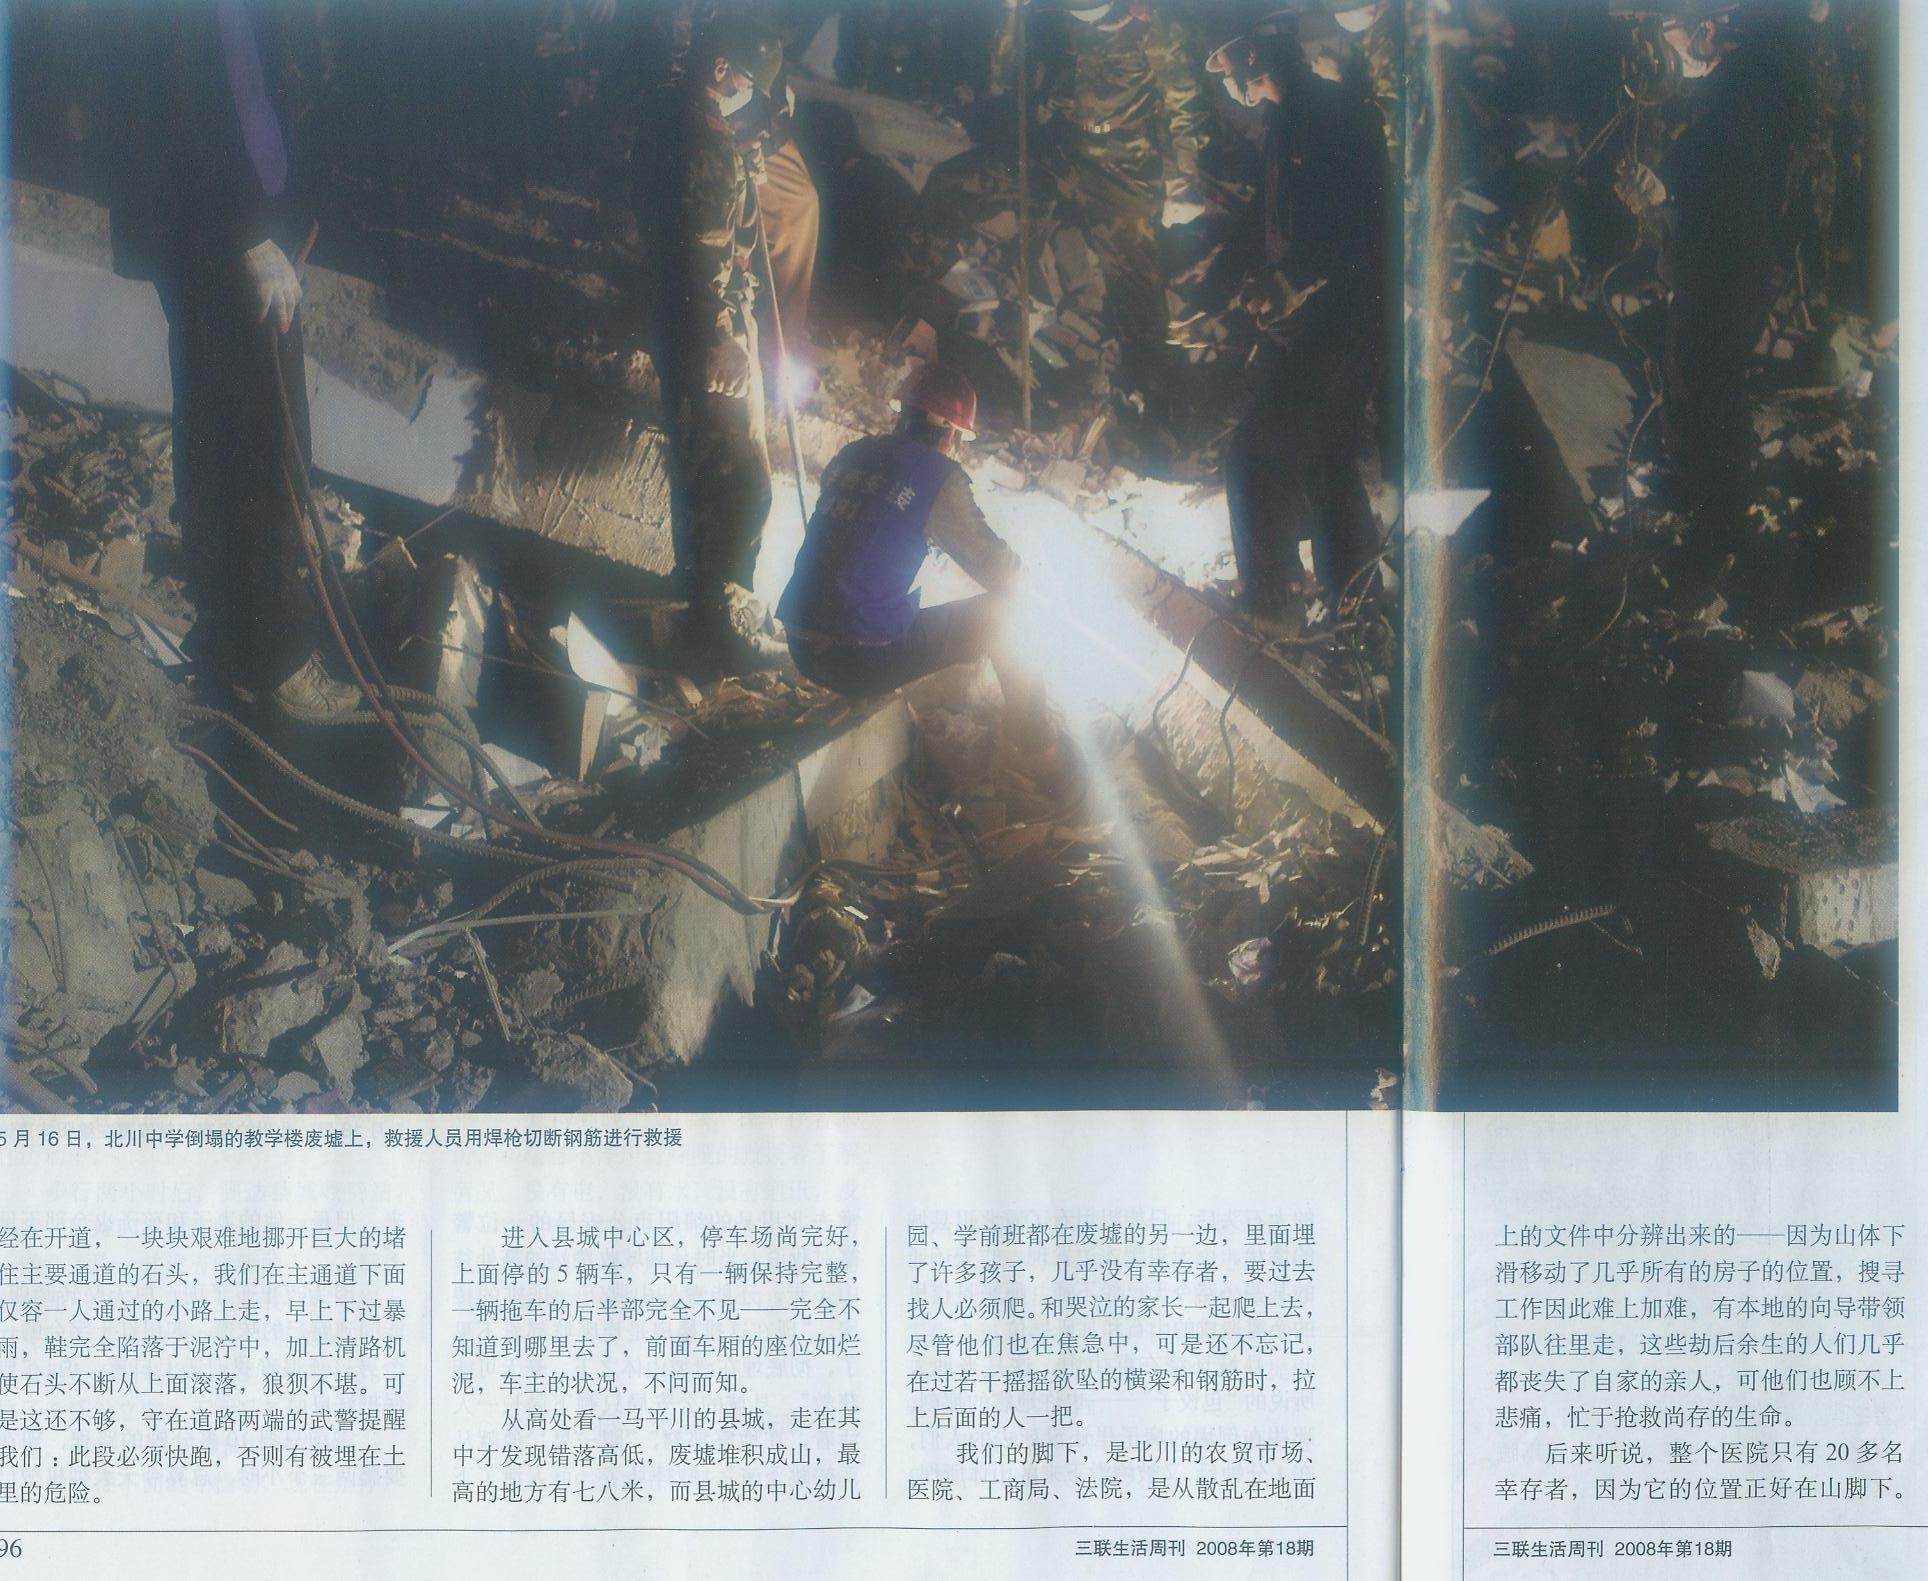 一张在全国《三联生活周刊》读者面前展示出华西安装人“平凡而伟大”的永存史册照片——写在汶川大地震15周年之际